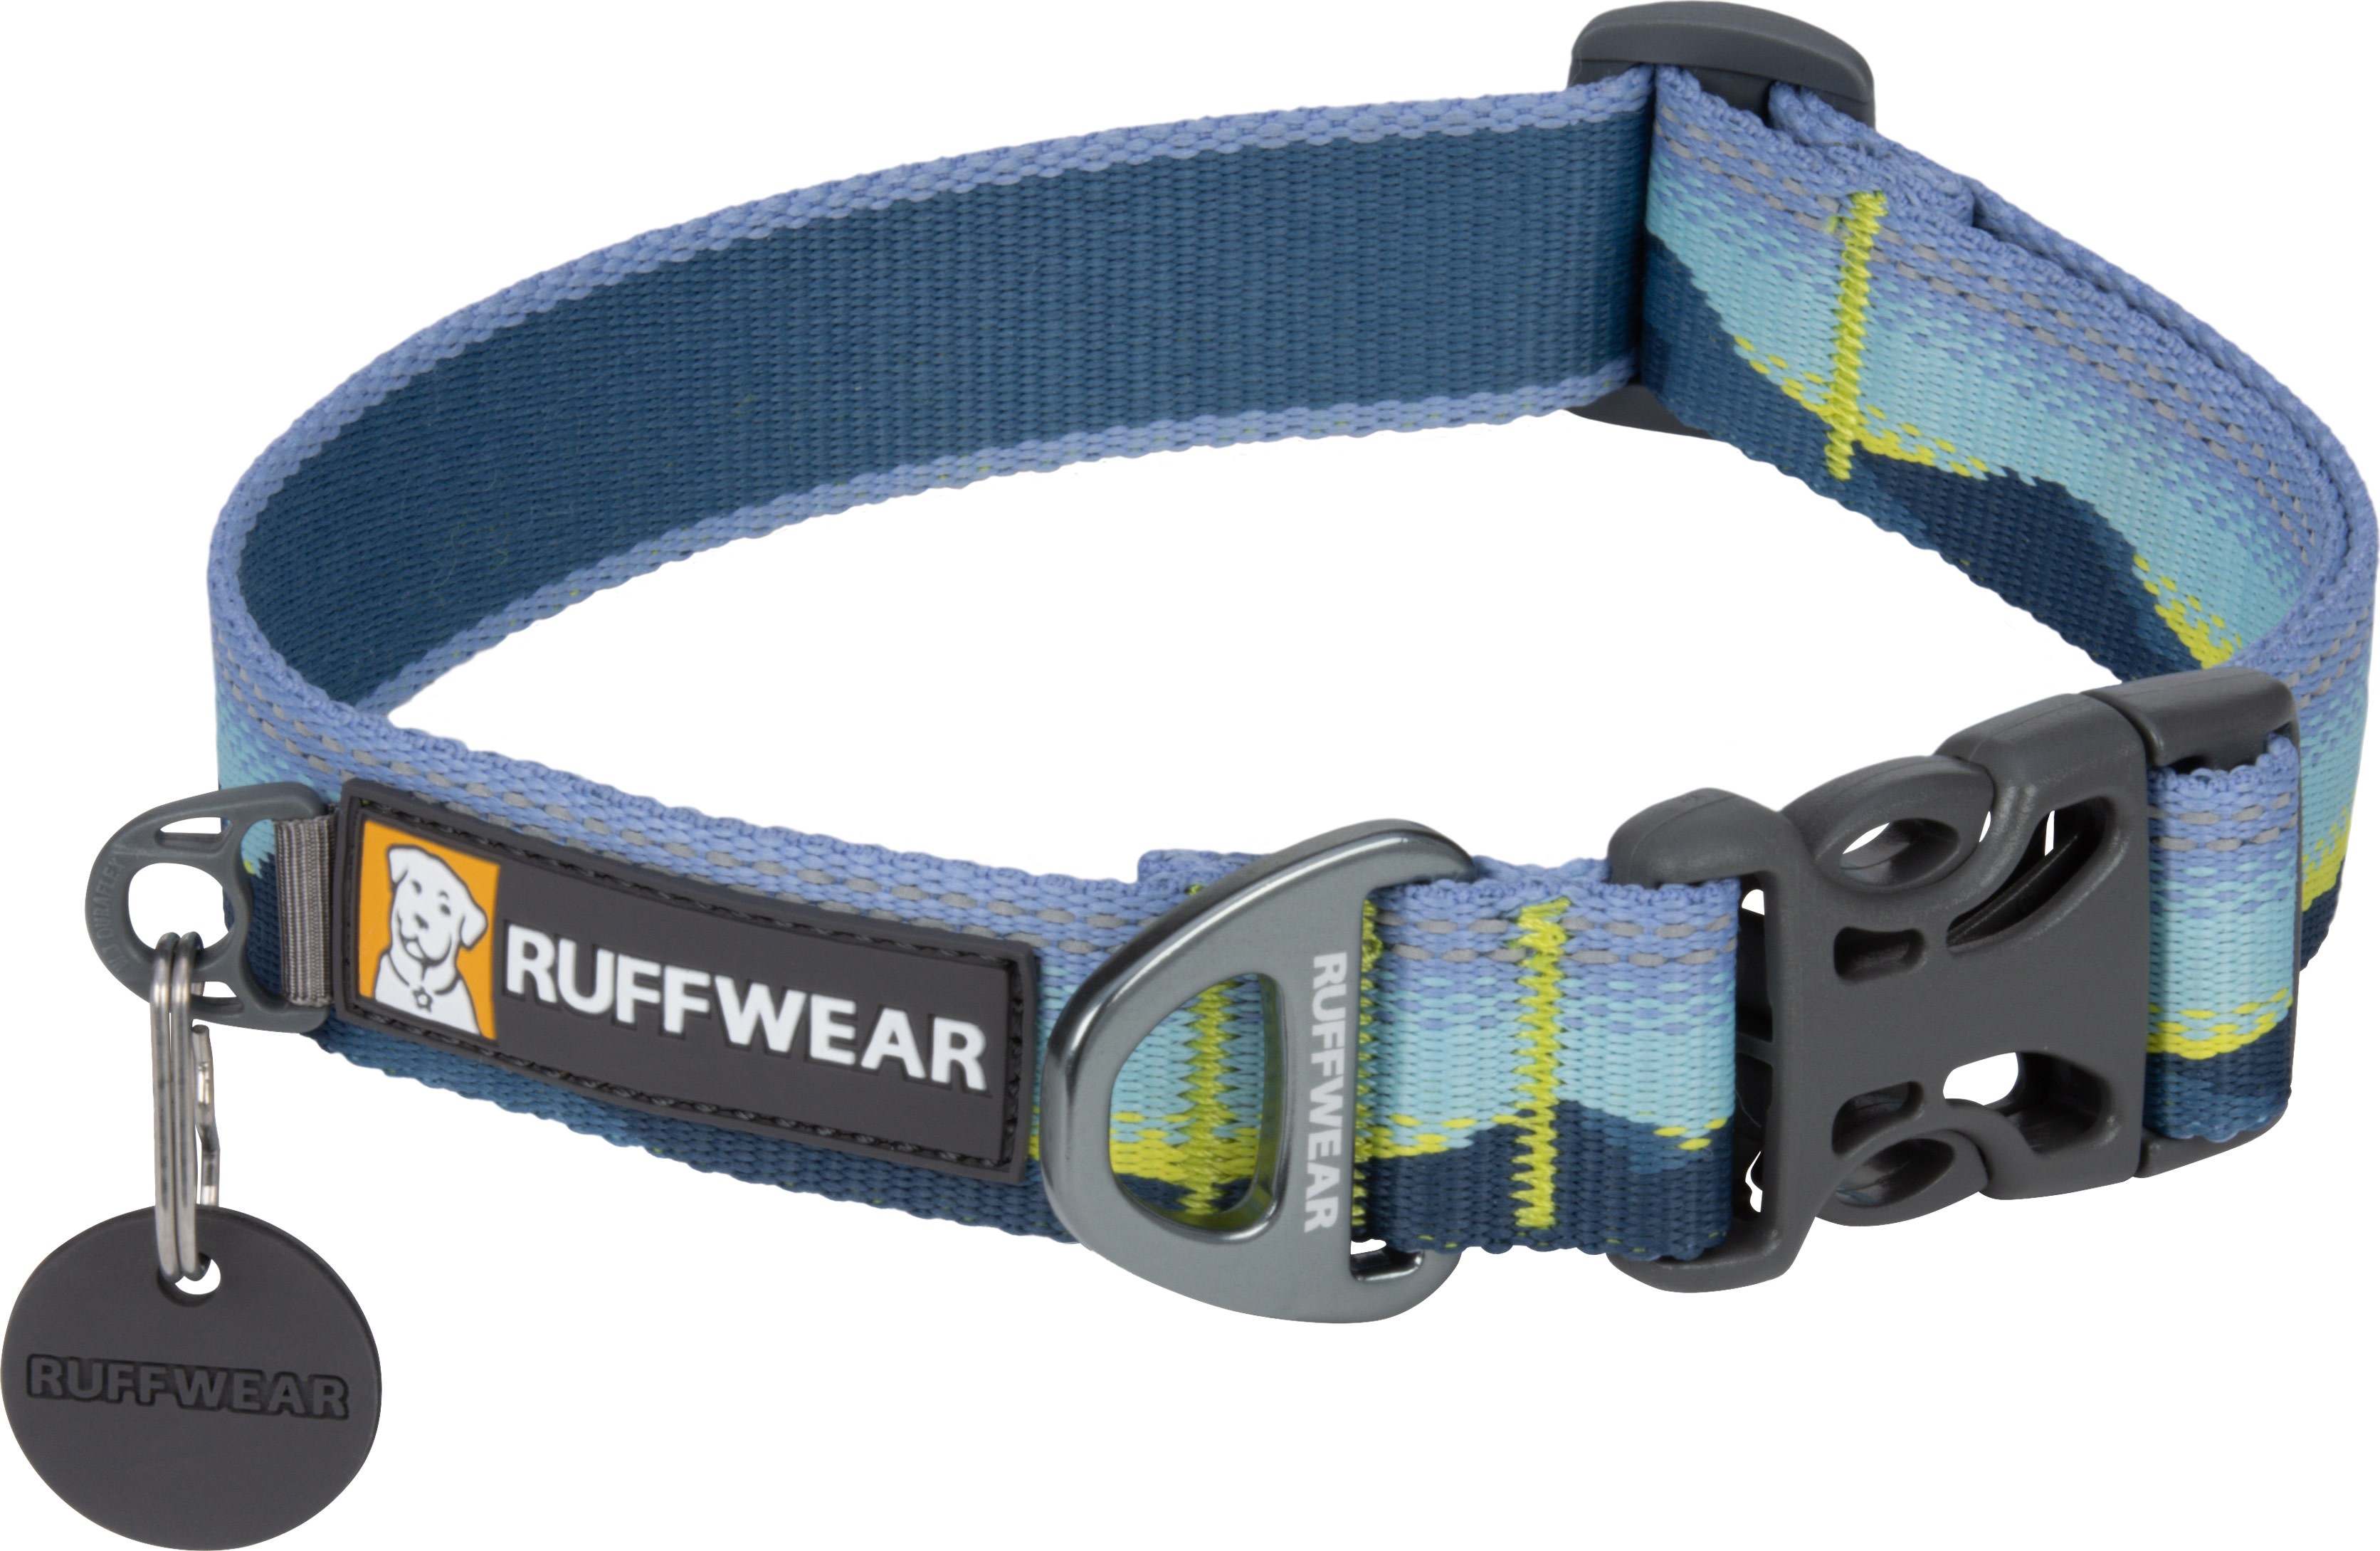 Ruffwear Crag Reflective Dog Collar Alpine Dawn